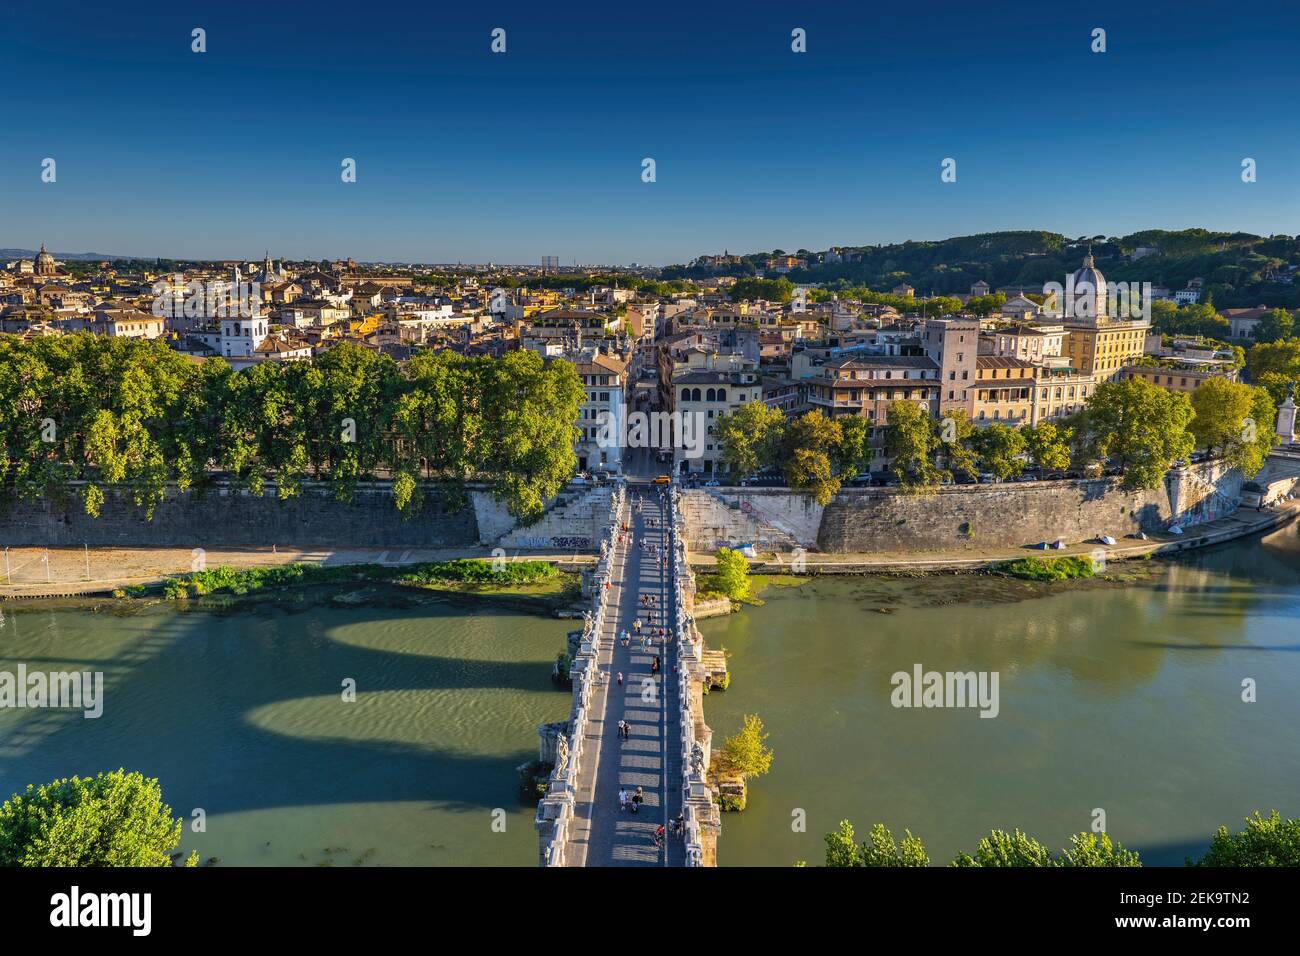 Italien, Rom, Stadtbild mit Blick über die Ponte Saint Angelo Brücke am Tiber Stockfoto